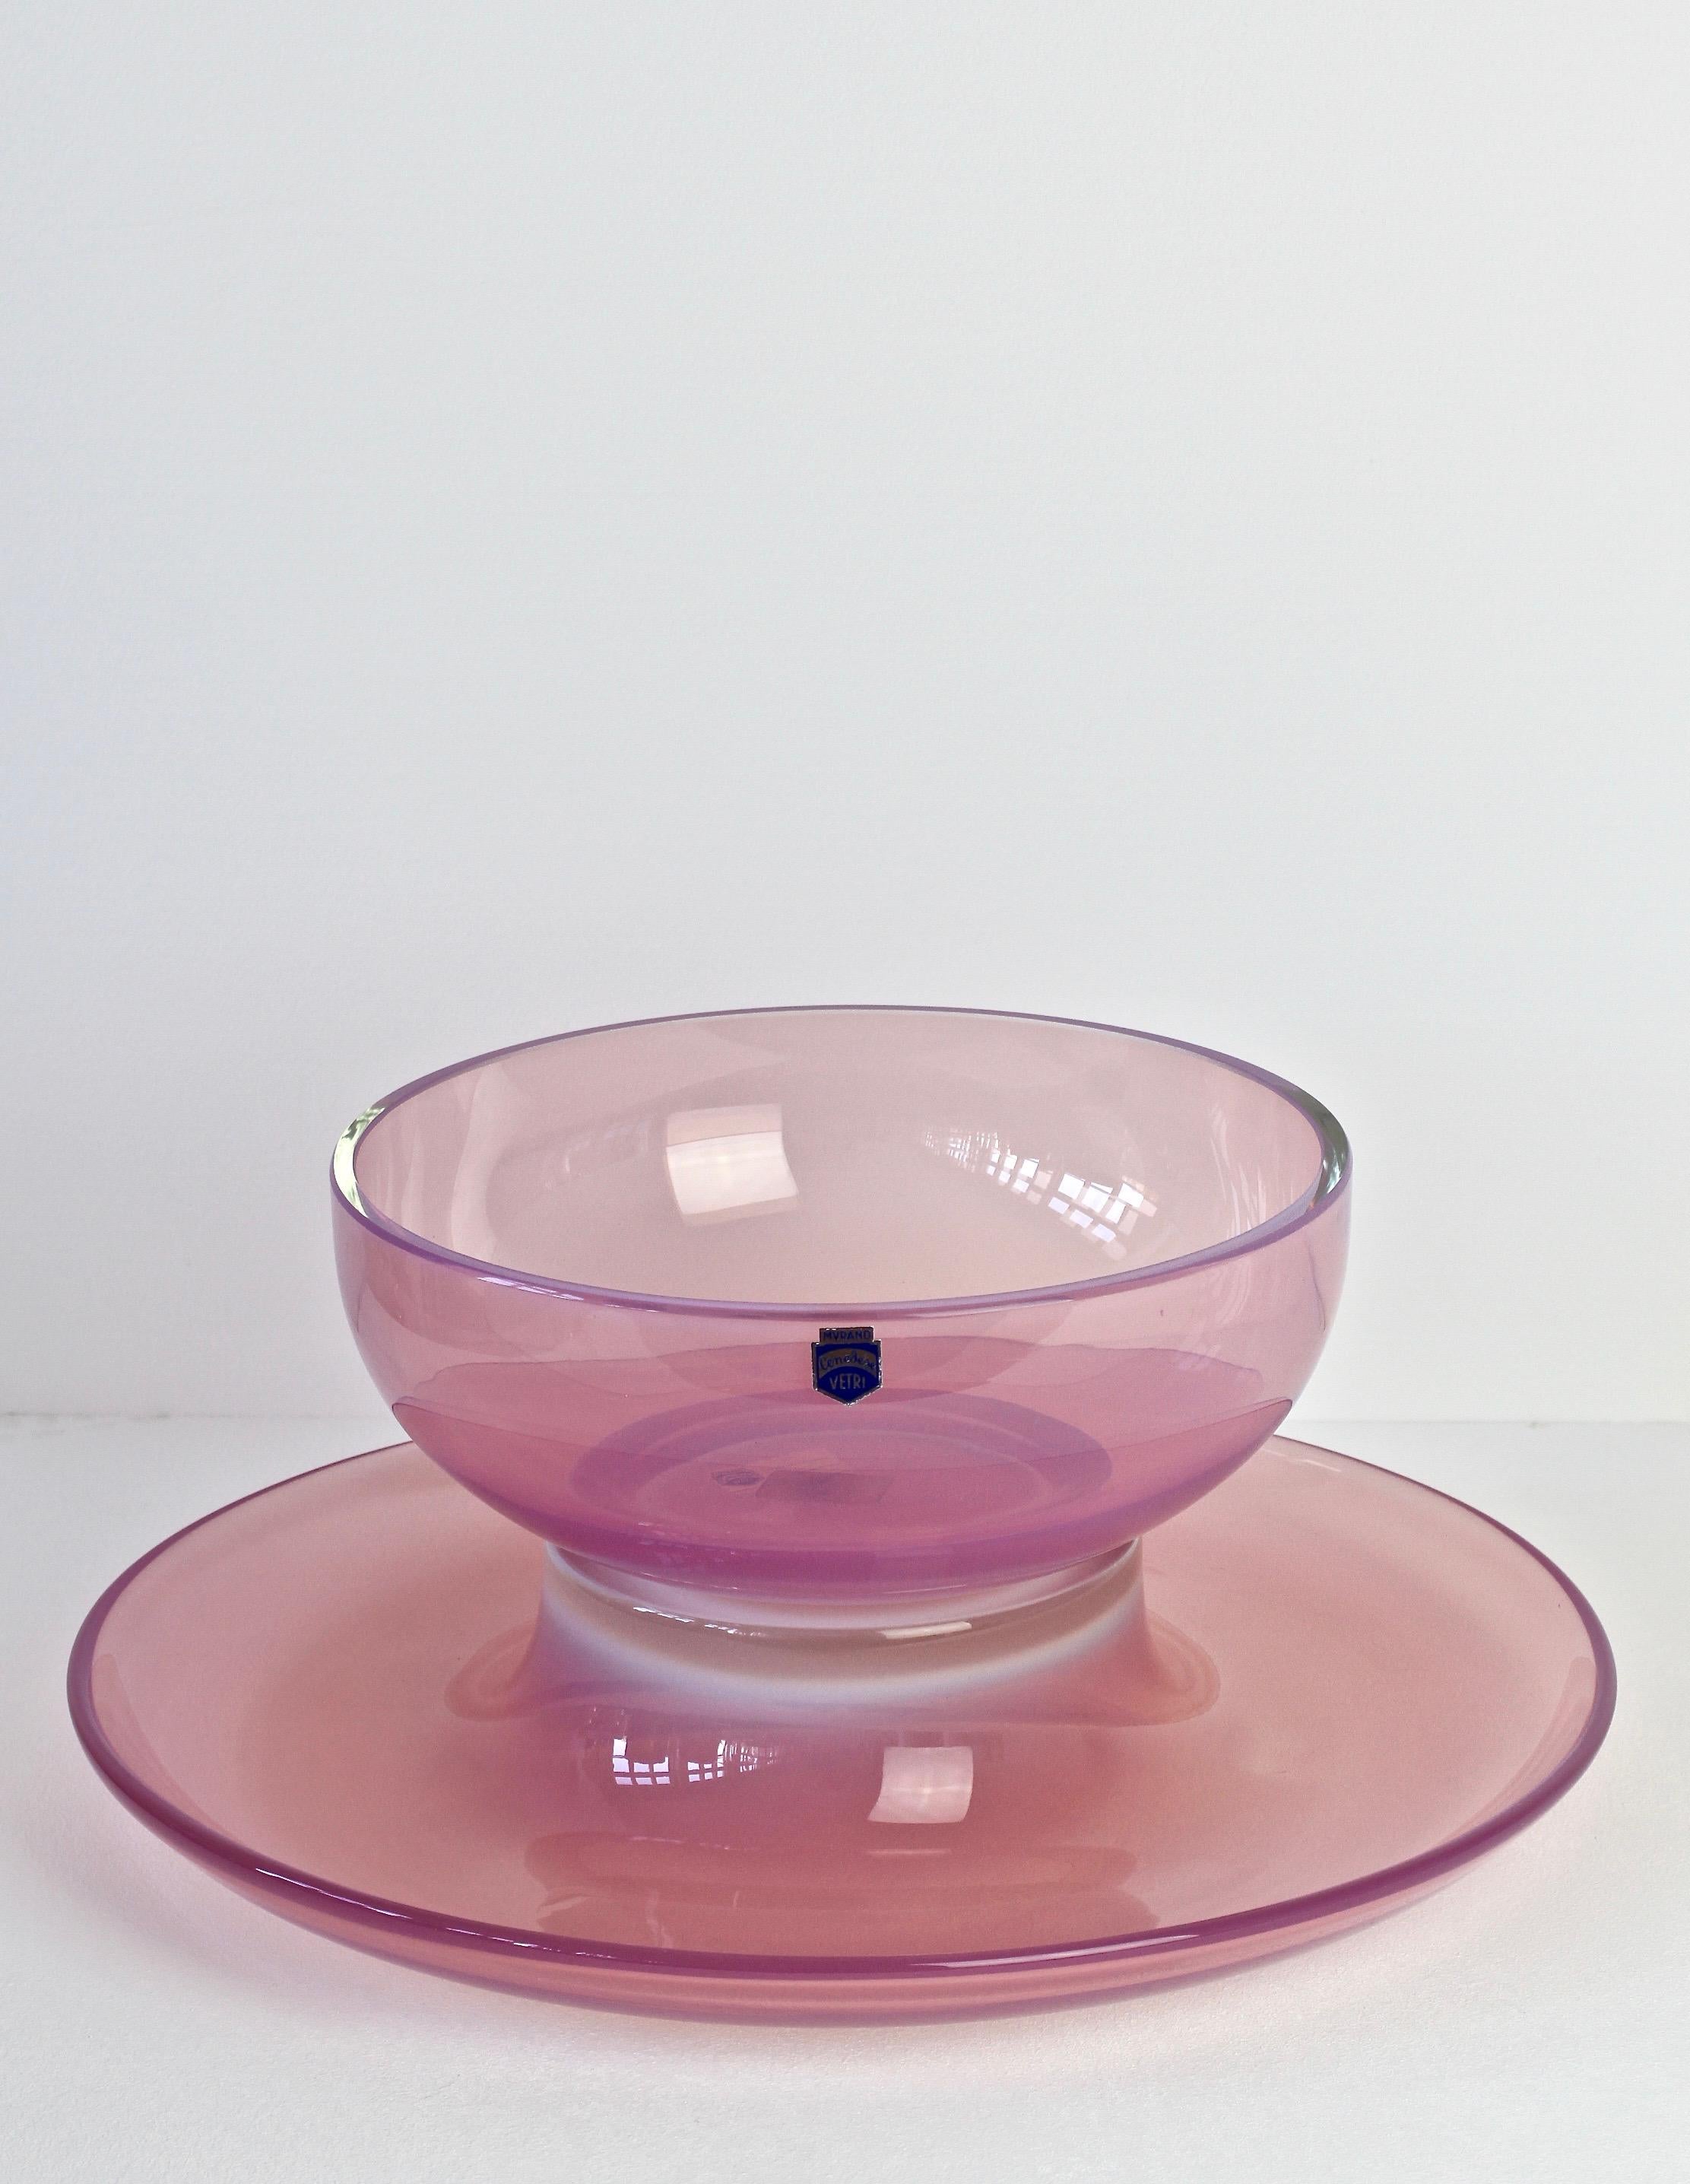 Antonio Da Ros for Cenedese Italian Murano Glass Vibrant Pink Colored Bowl For Sale 5